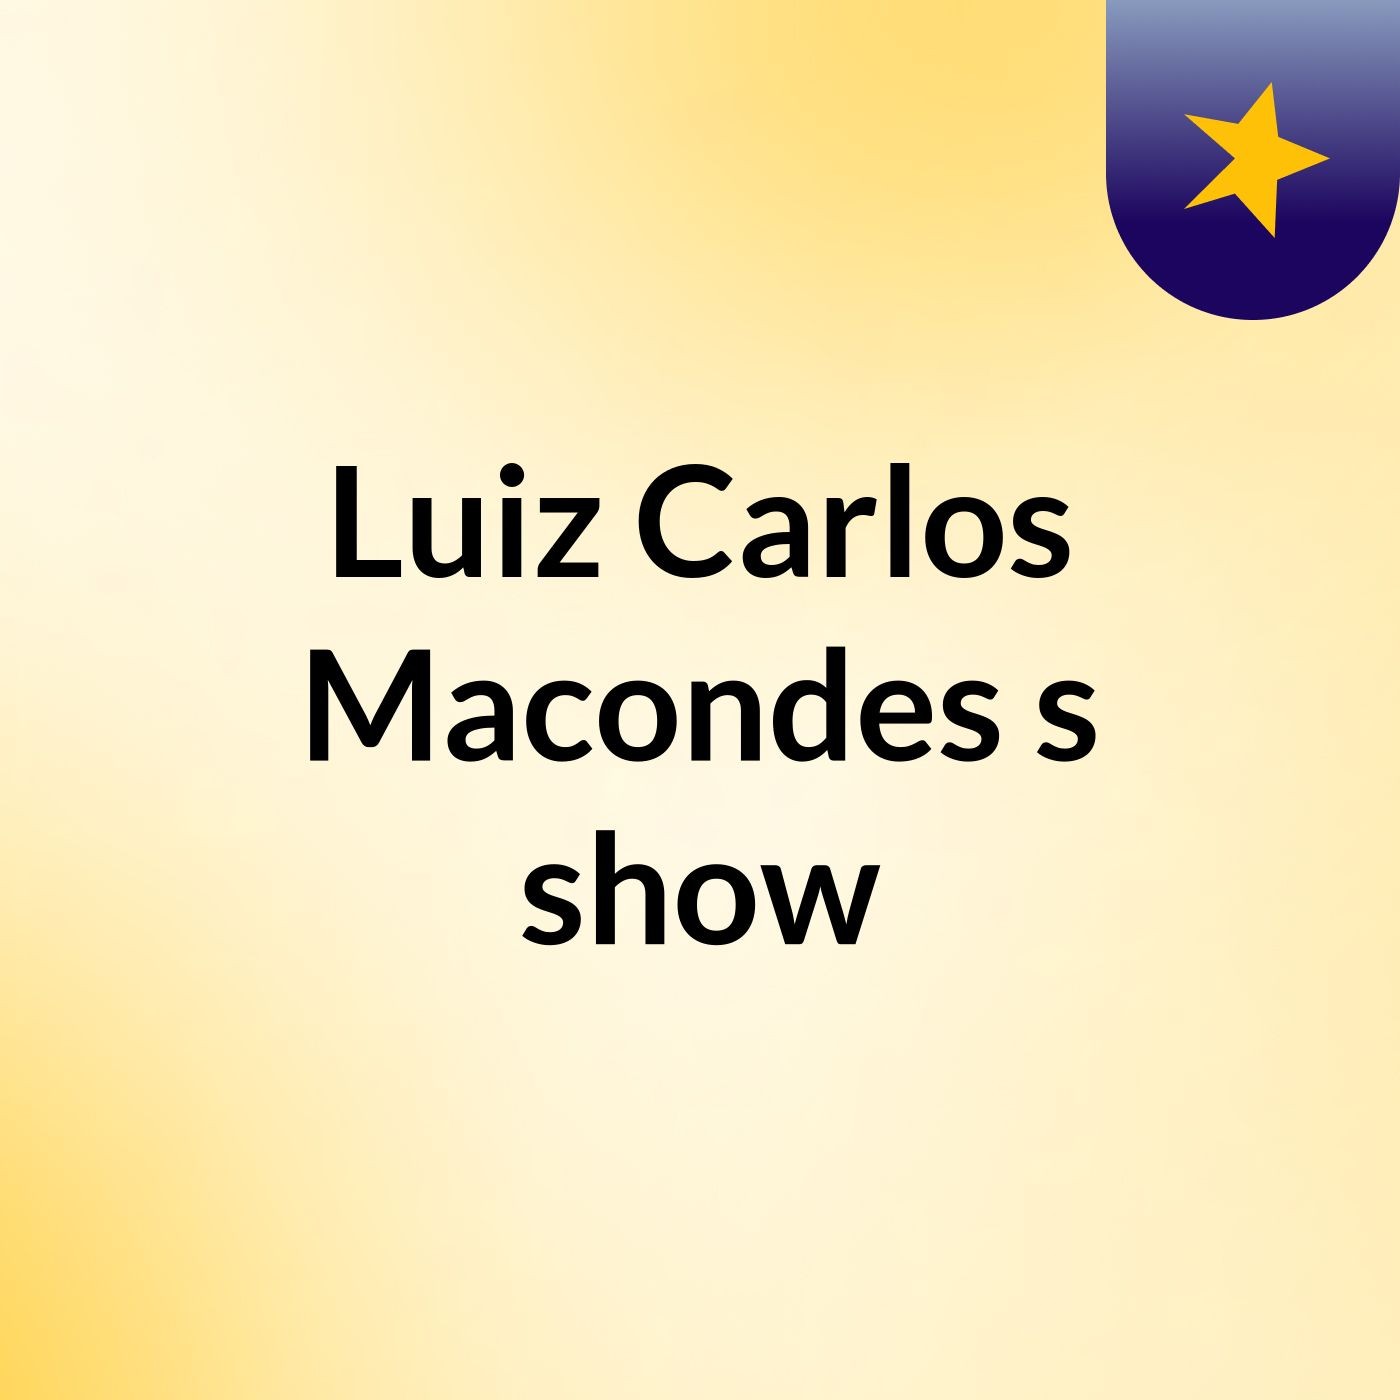 Luiz Carlos Macondes's show